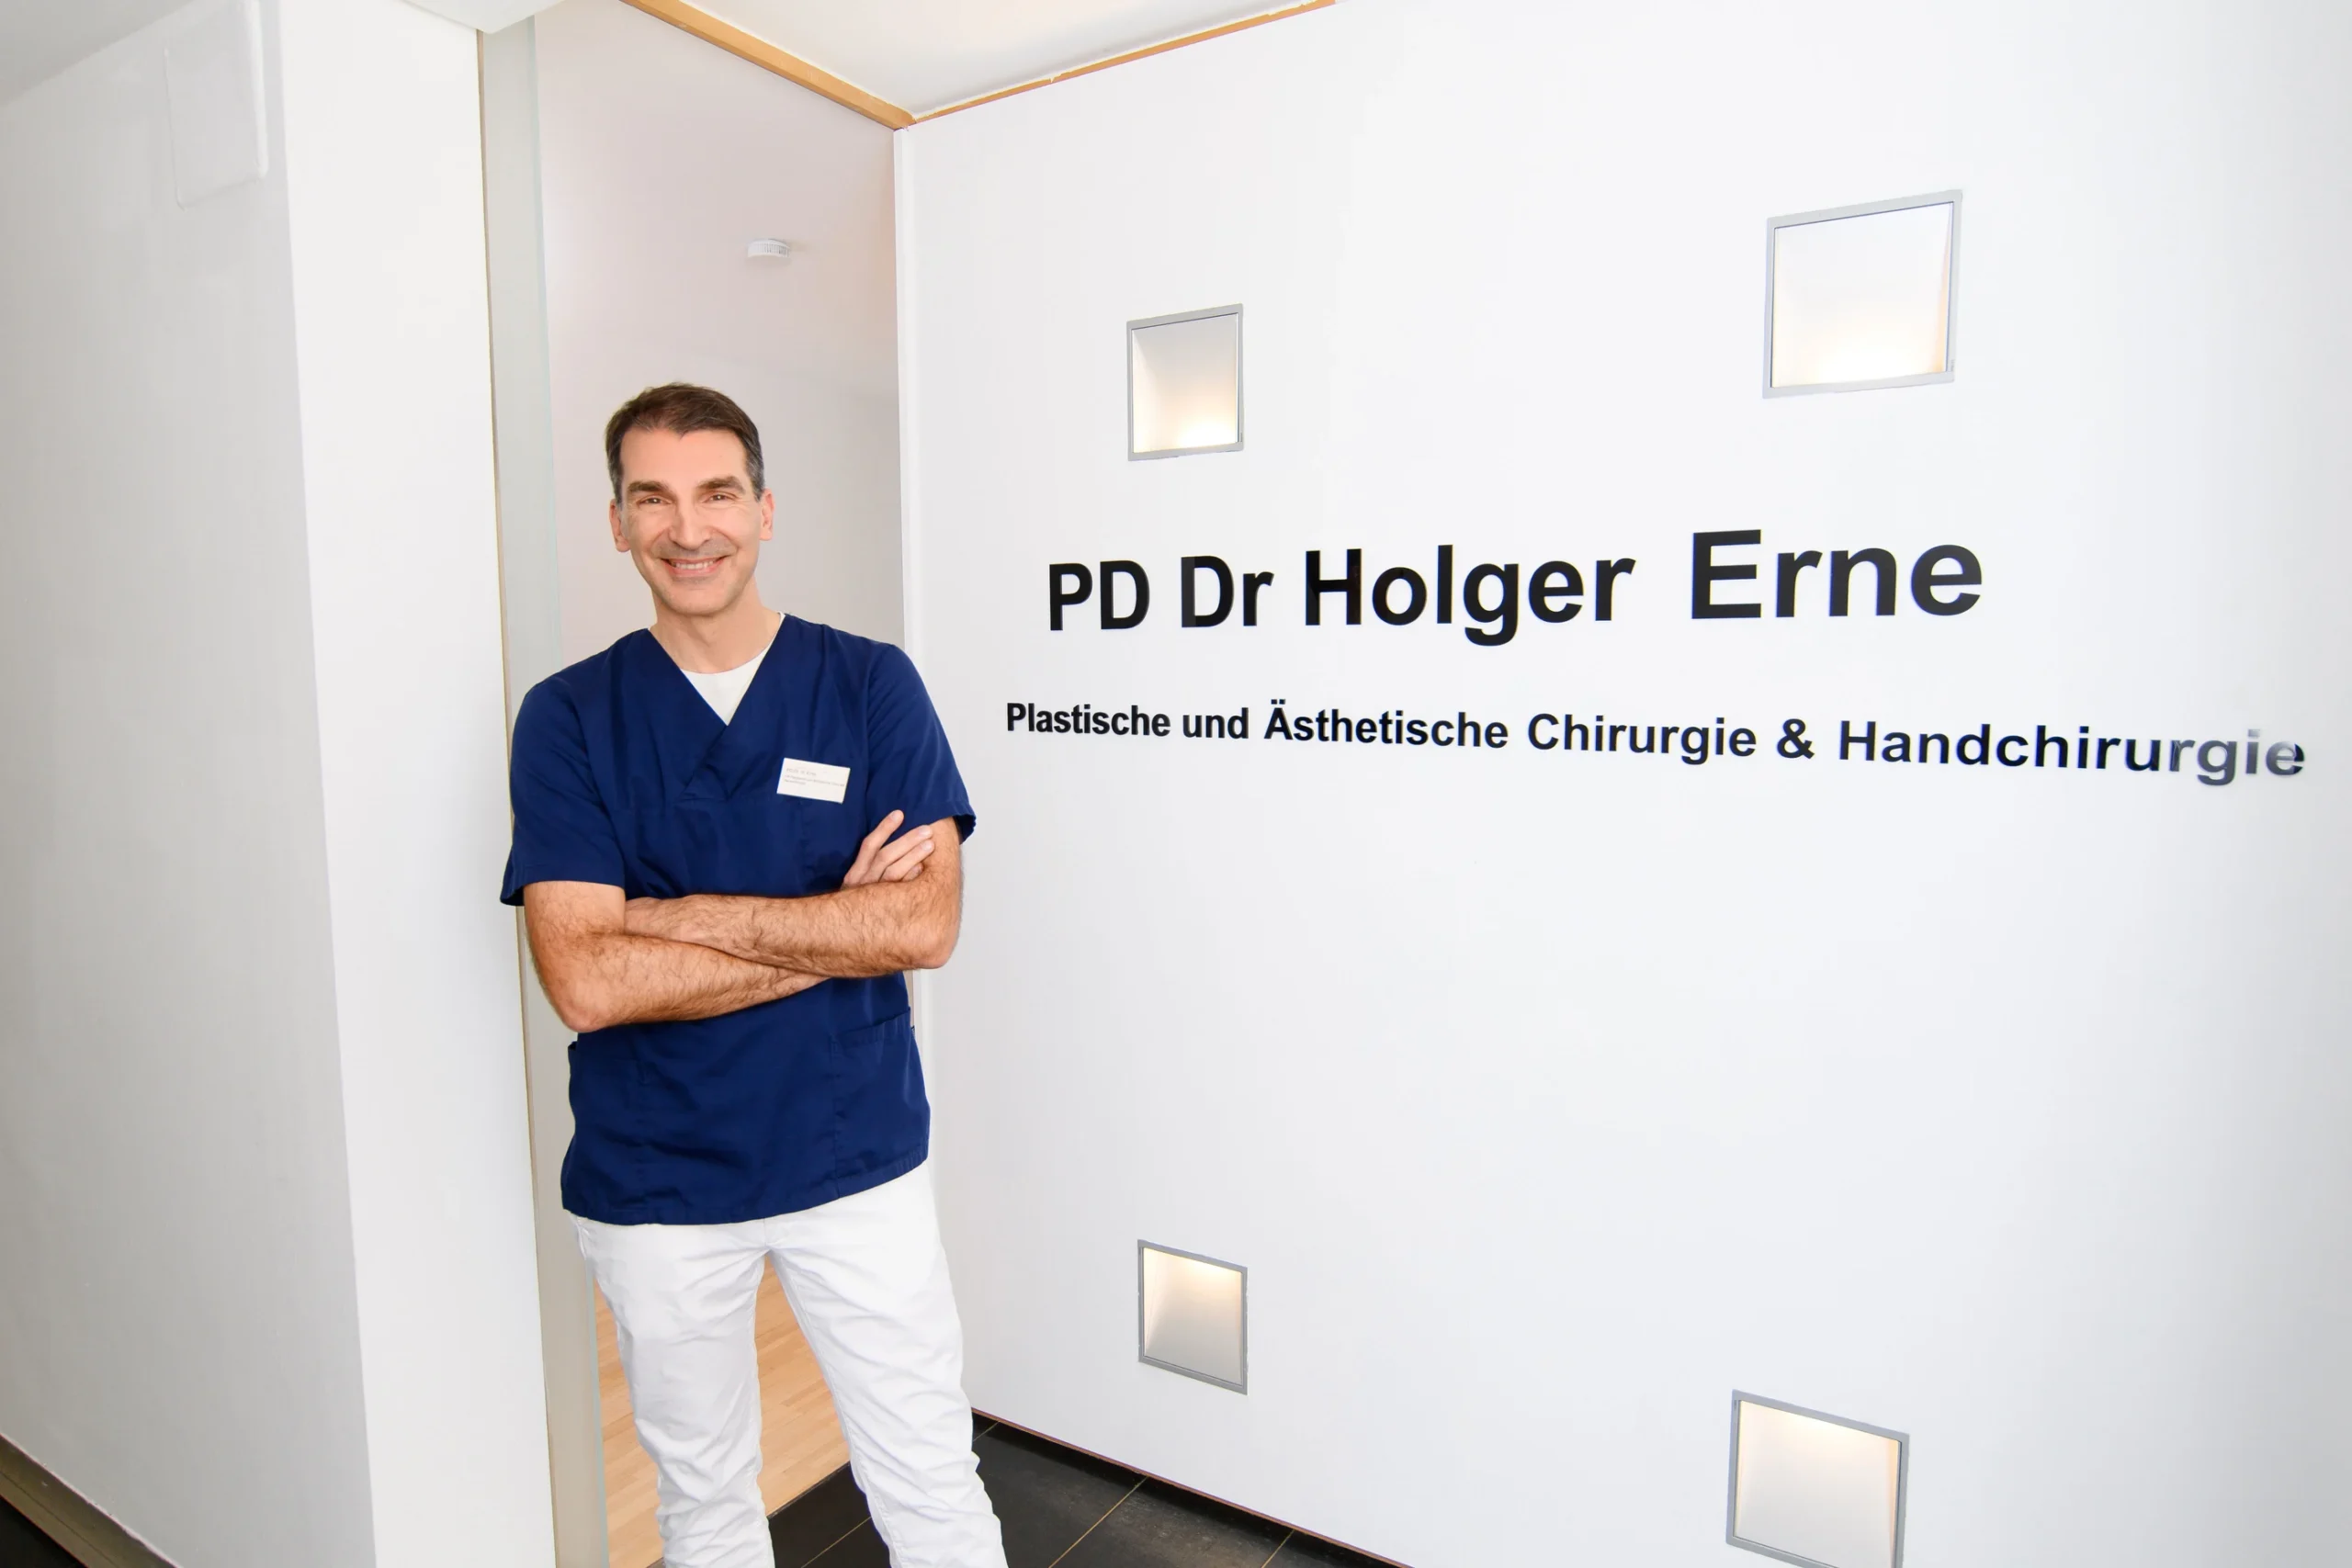 Zu sehen ist Dr. Holger Erne sympathisch in die Kamera lächelnd. Er steht vor seinem Patientenzimmer, am Eingang stehen große Buchstaben an der Wand mit seinem Namen 